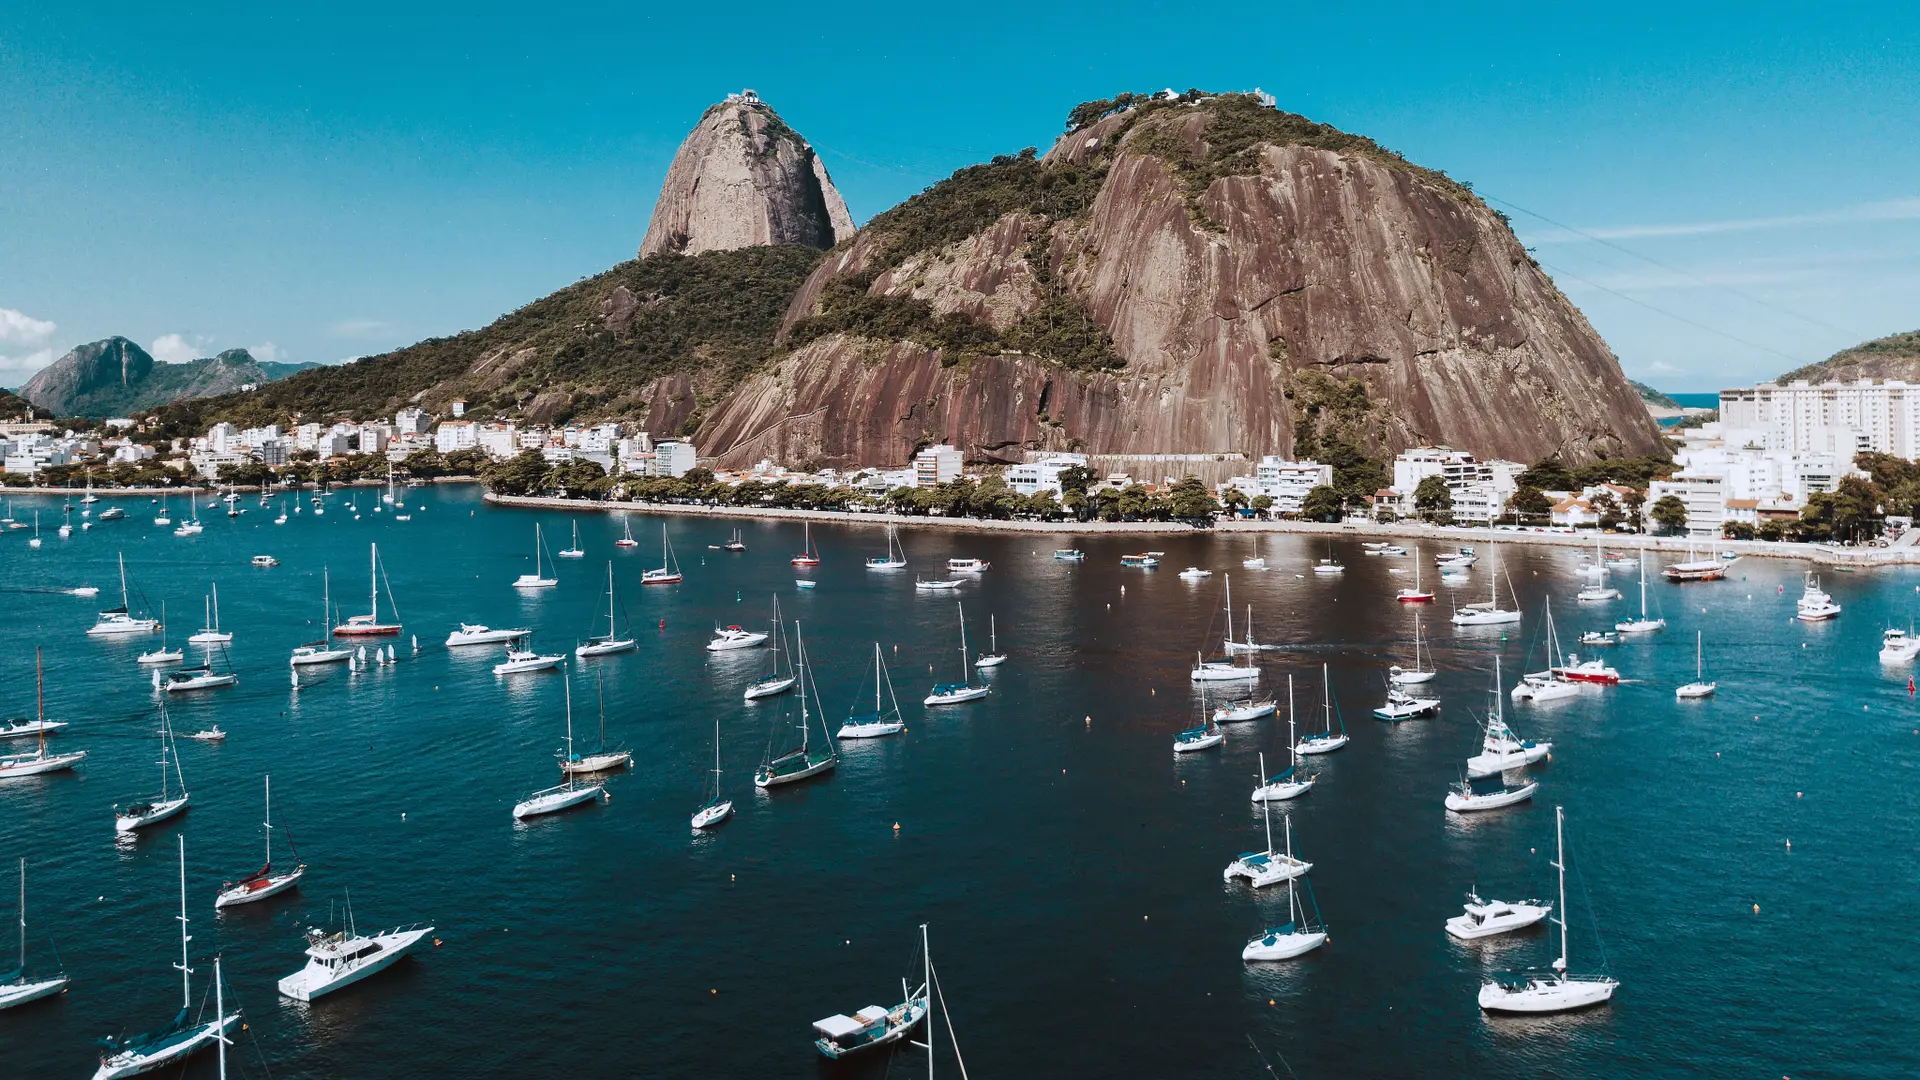 Destinations Articles - Rio de Janeiro Travel Guide